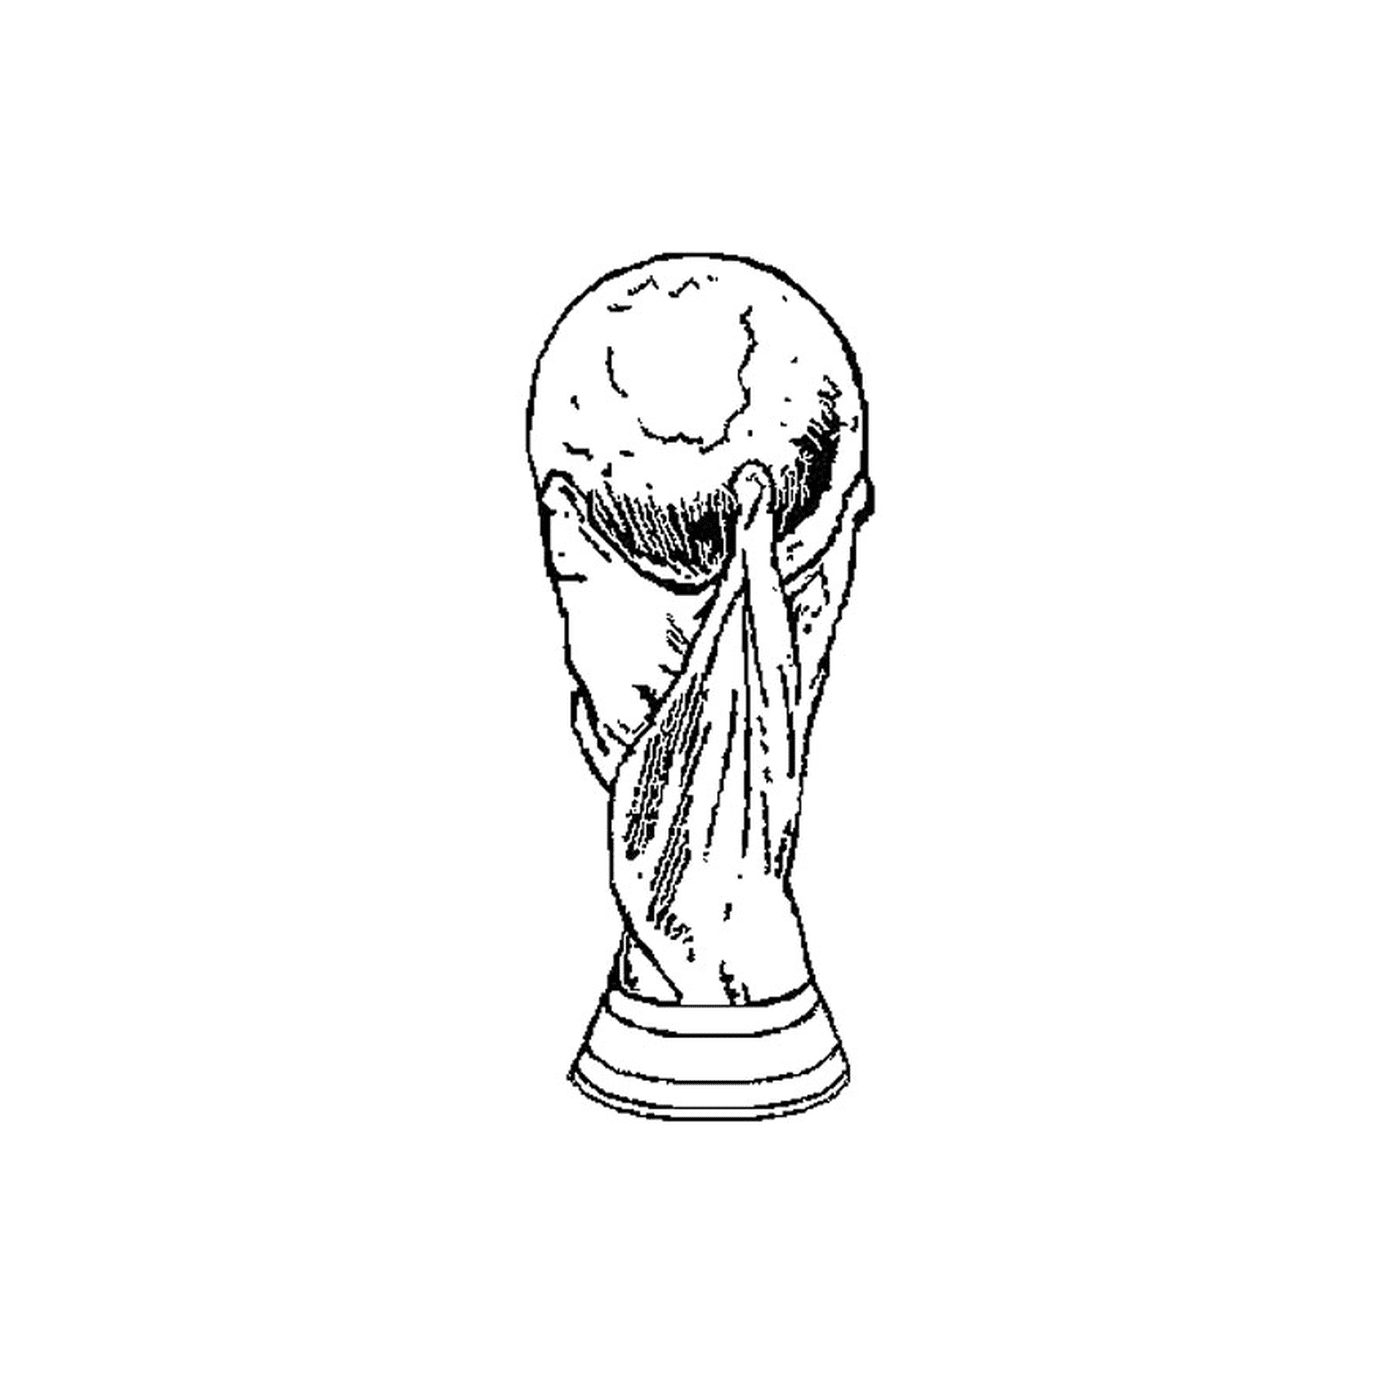  विश्व कप 